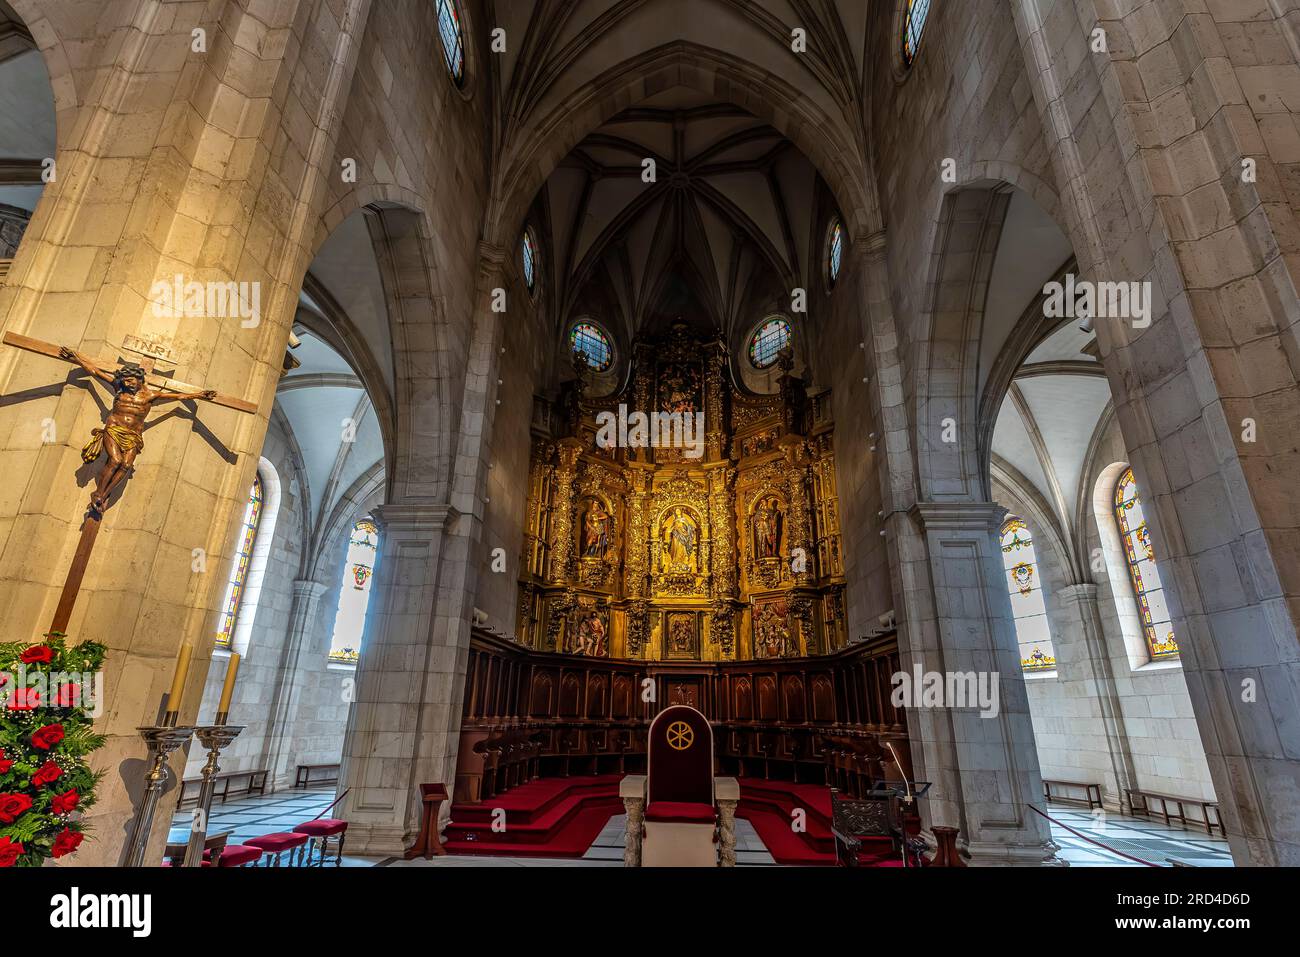 Inside Cathedral de Nuestra Senióra de la Asuncion de Santander, Cantabria, Spain. Stock Photo